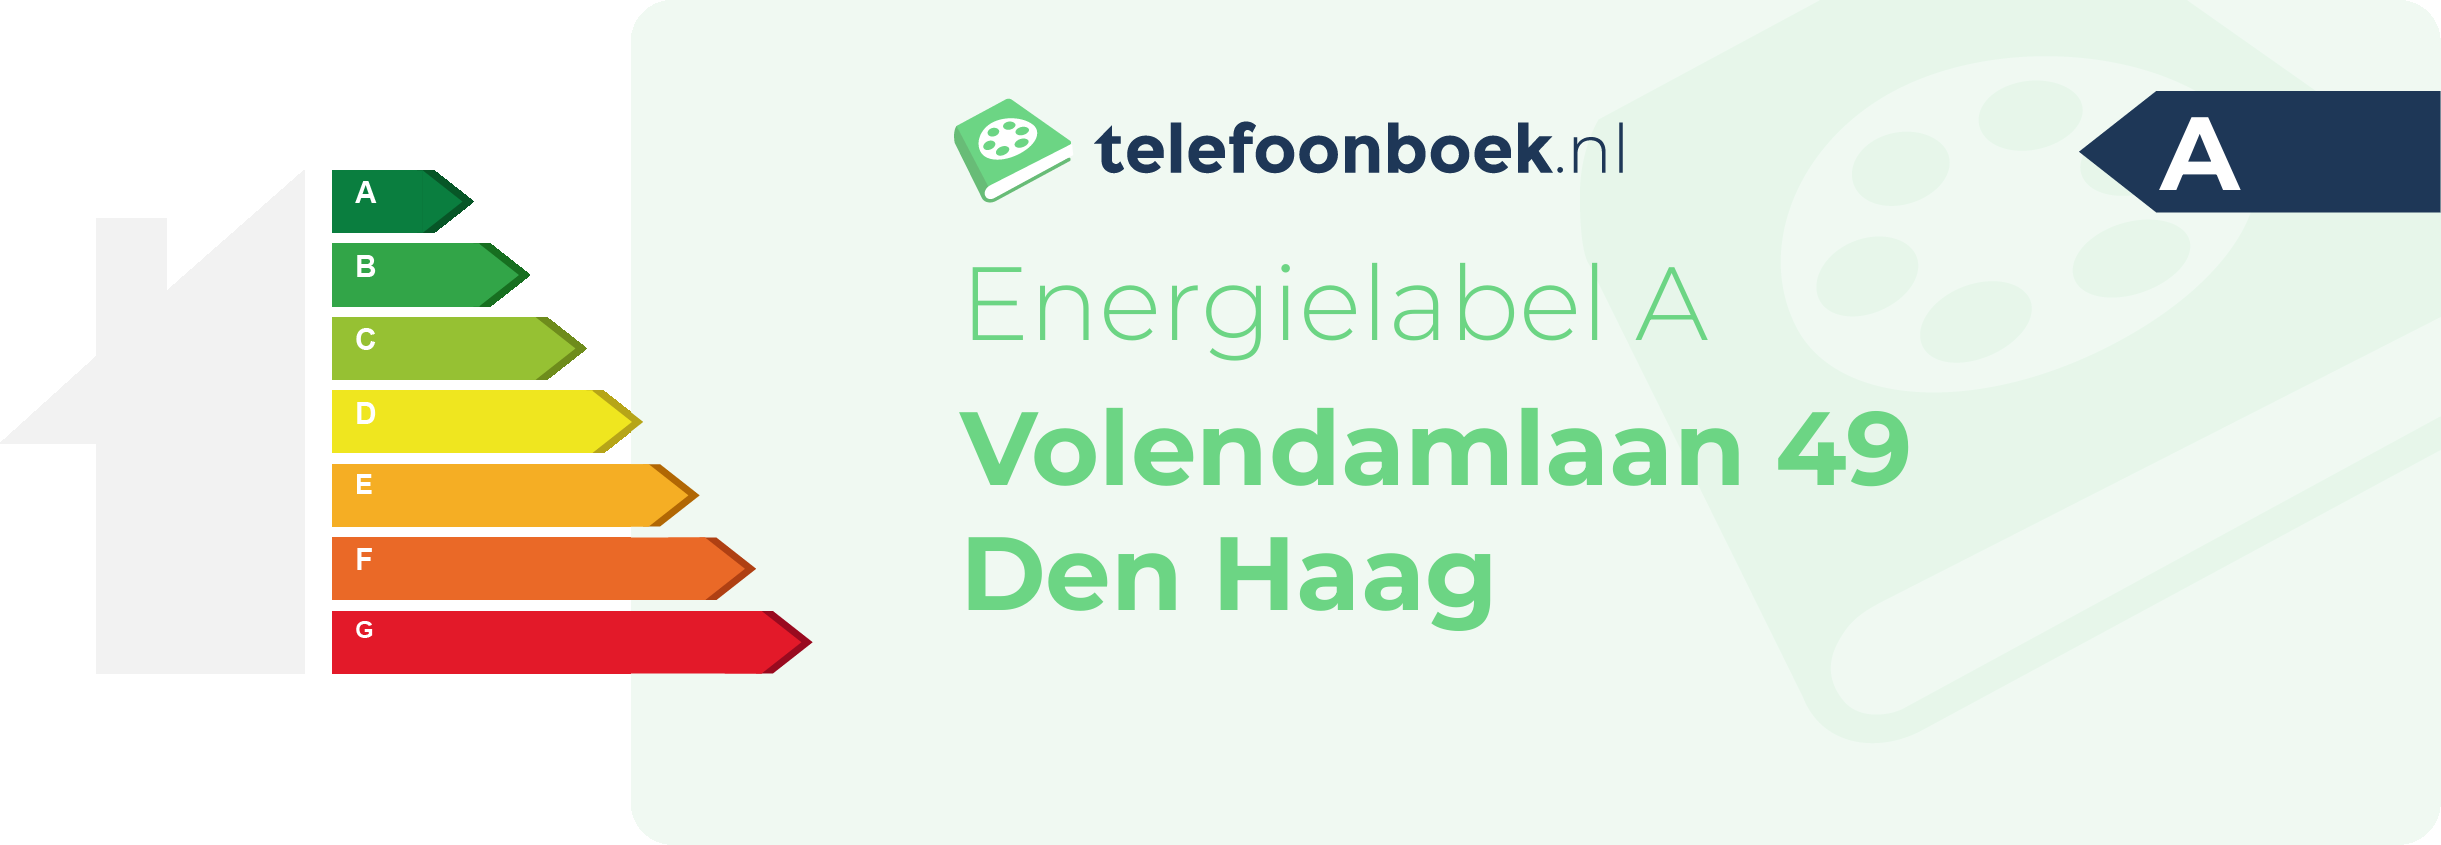 Energielabel Volendamlaan 49 Den Haag